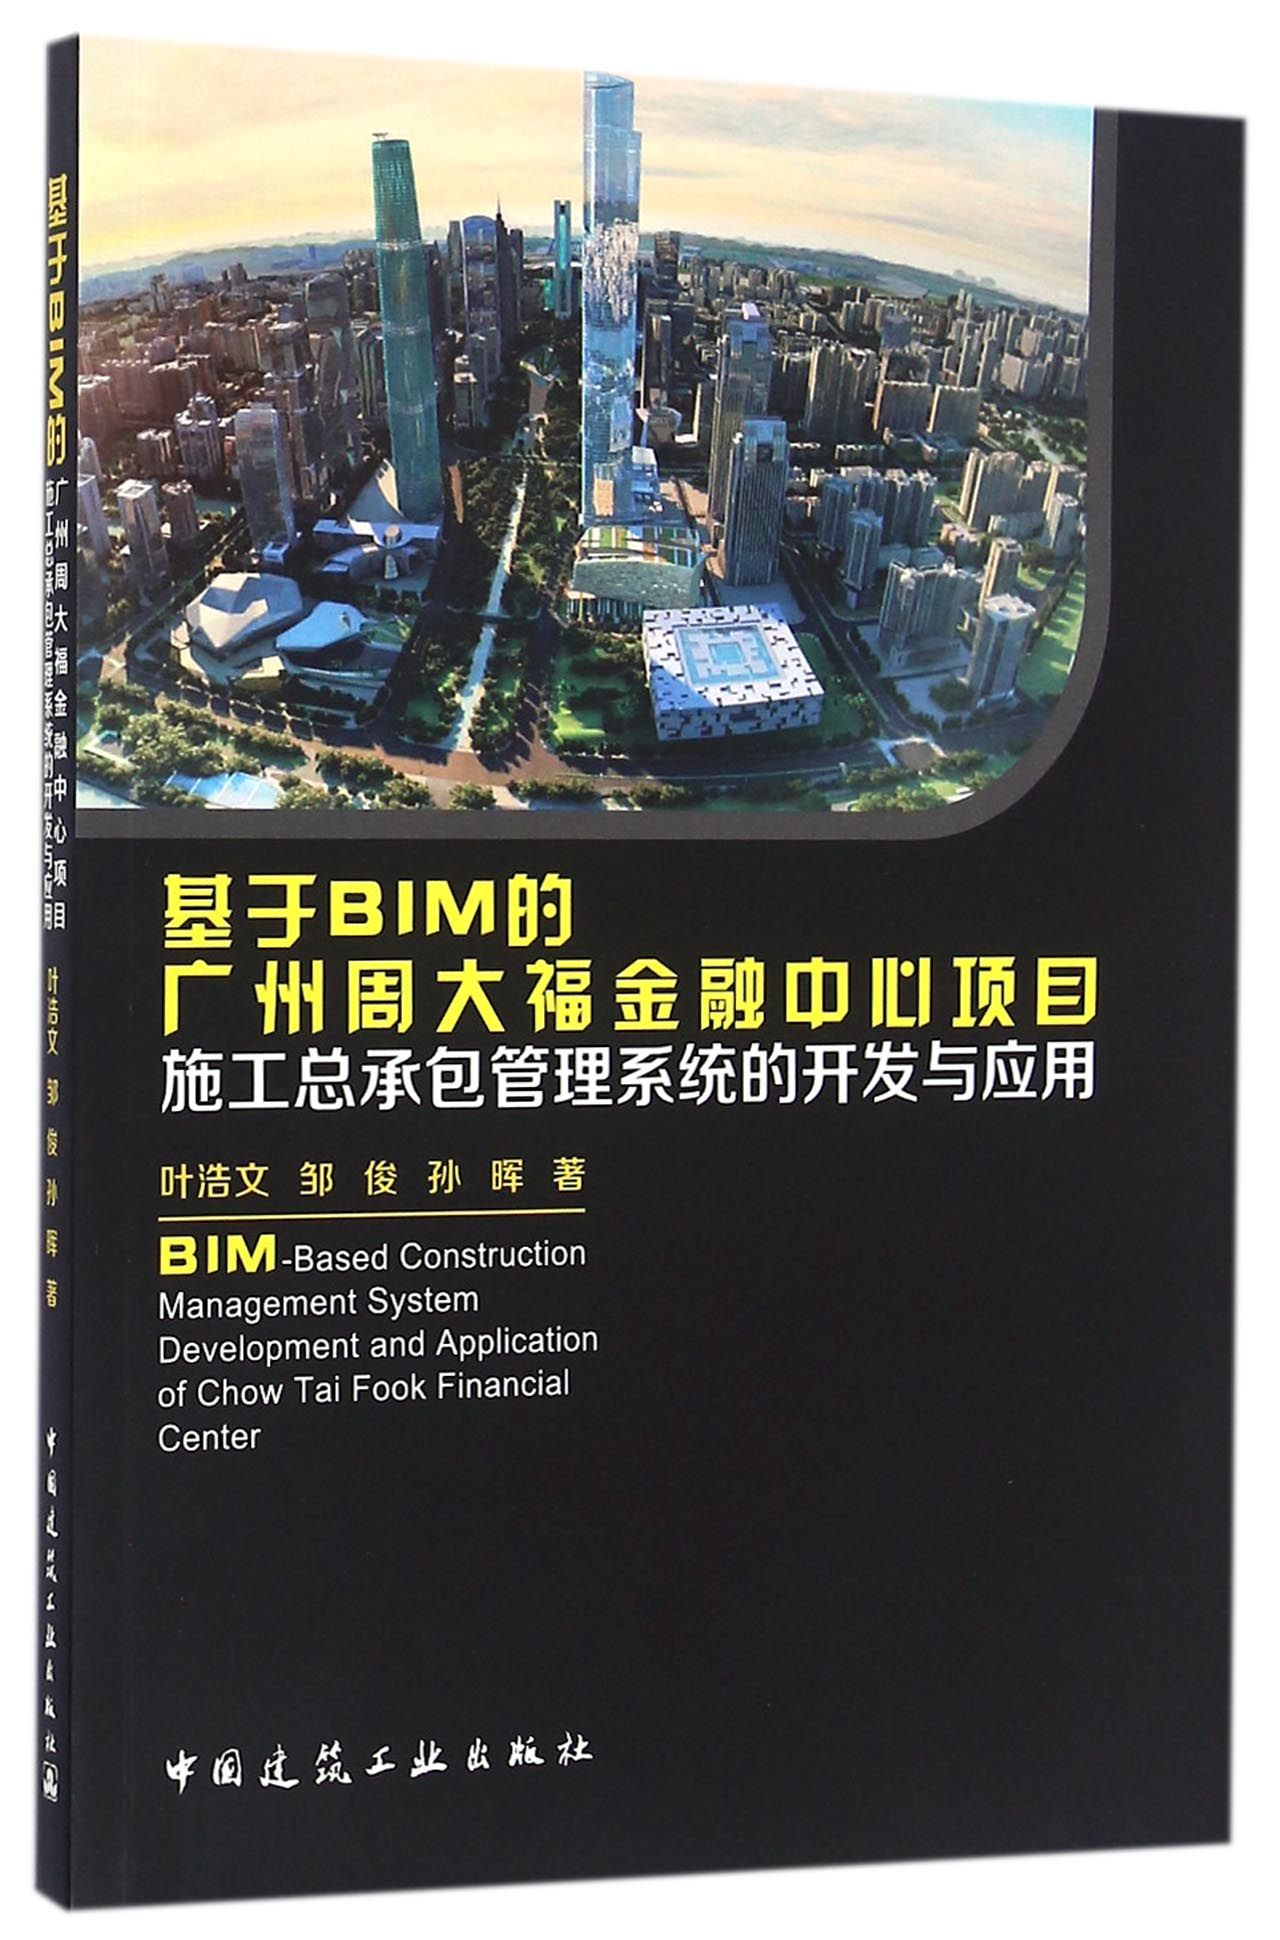 基于BIM的广州周大福金融中心项目施工总承包管理系统的开发与应用 pdf格式下载